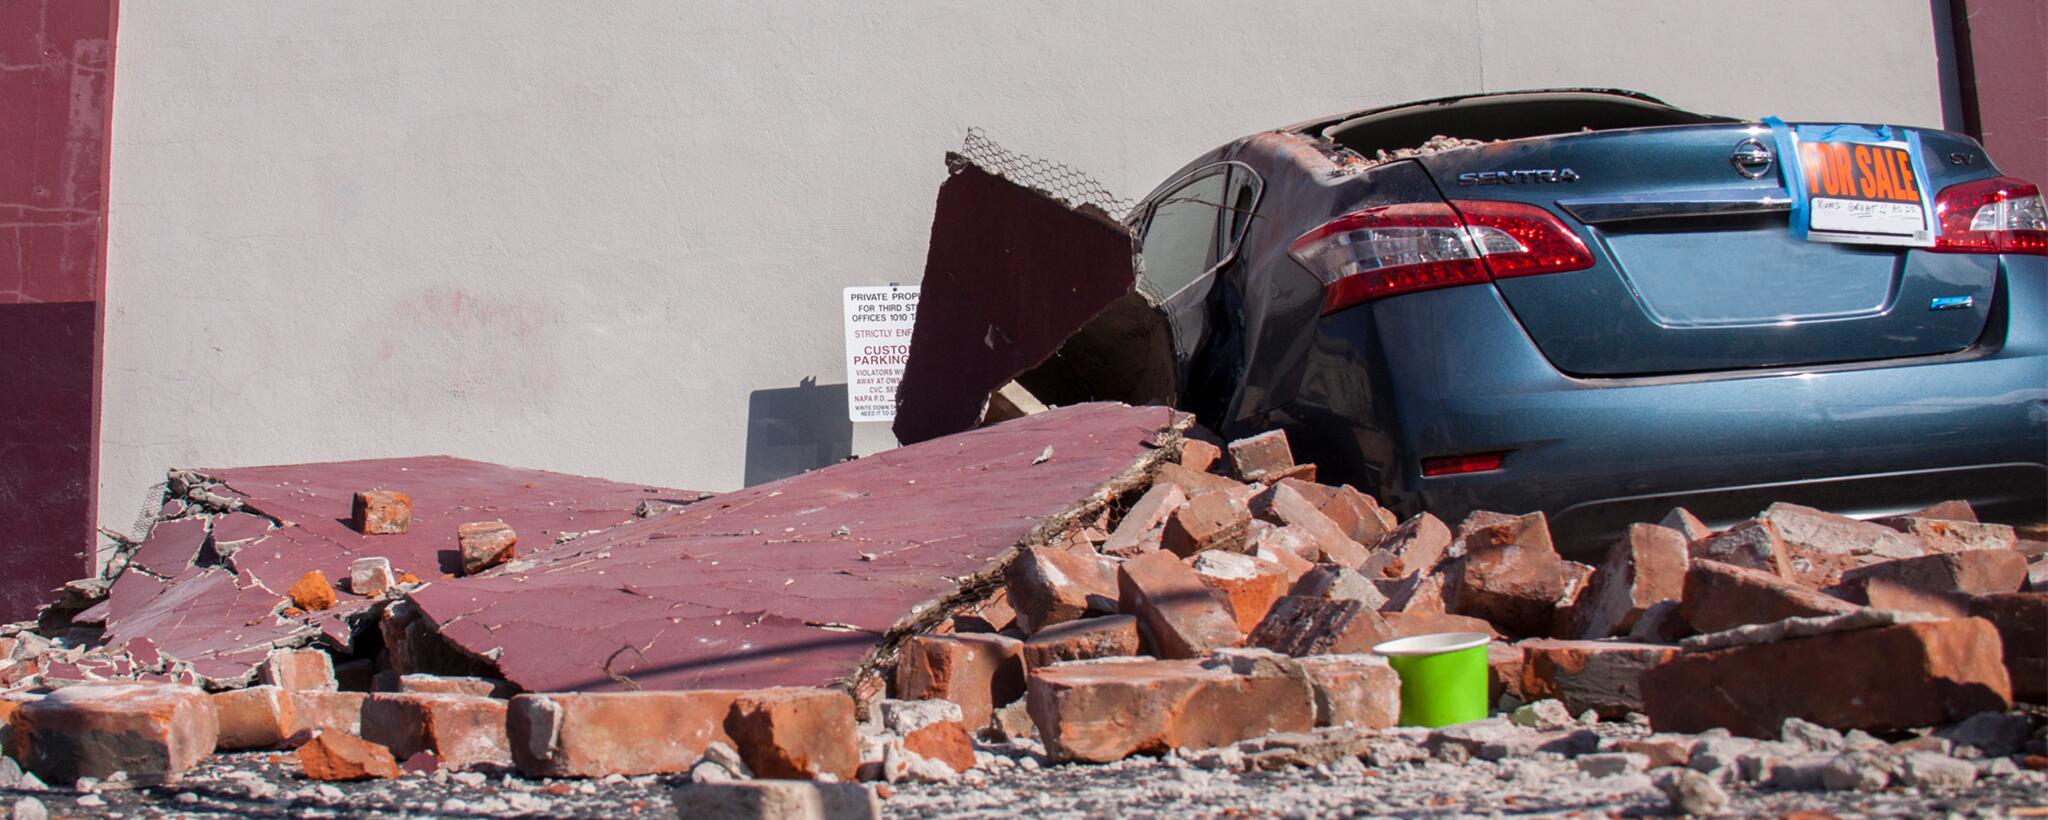 a car damaged by an earthquake